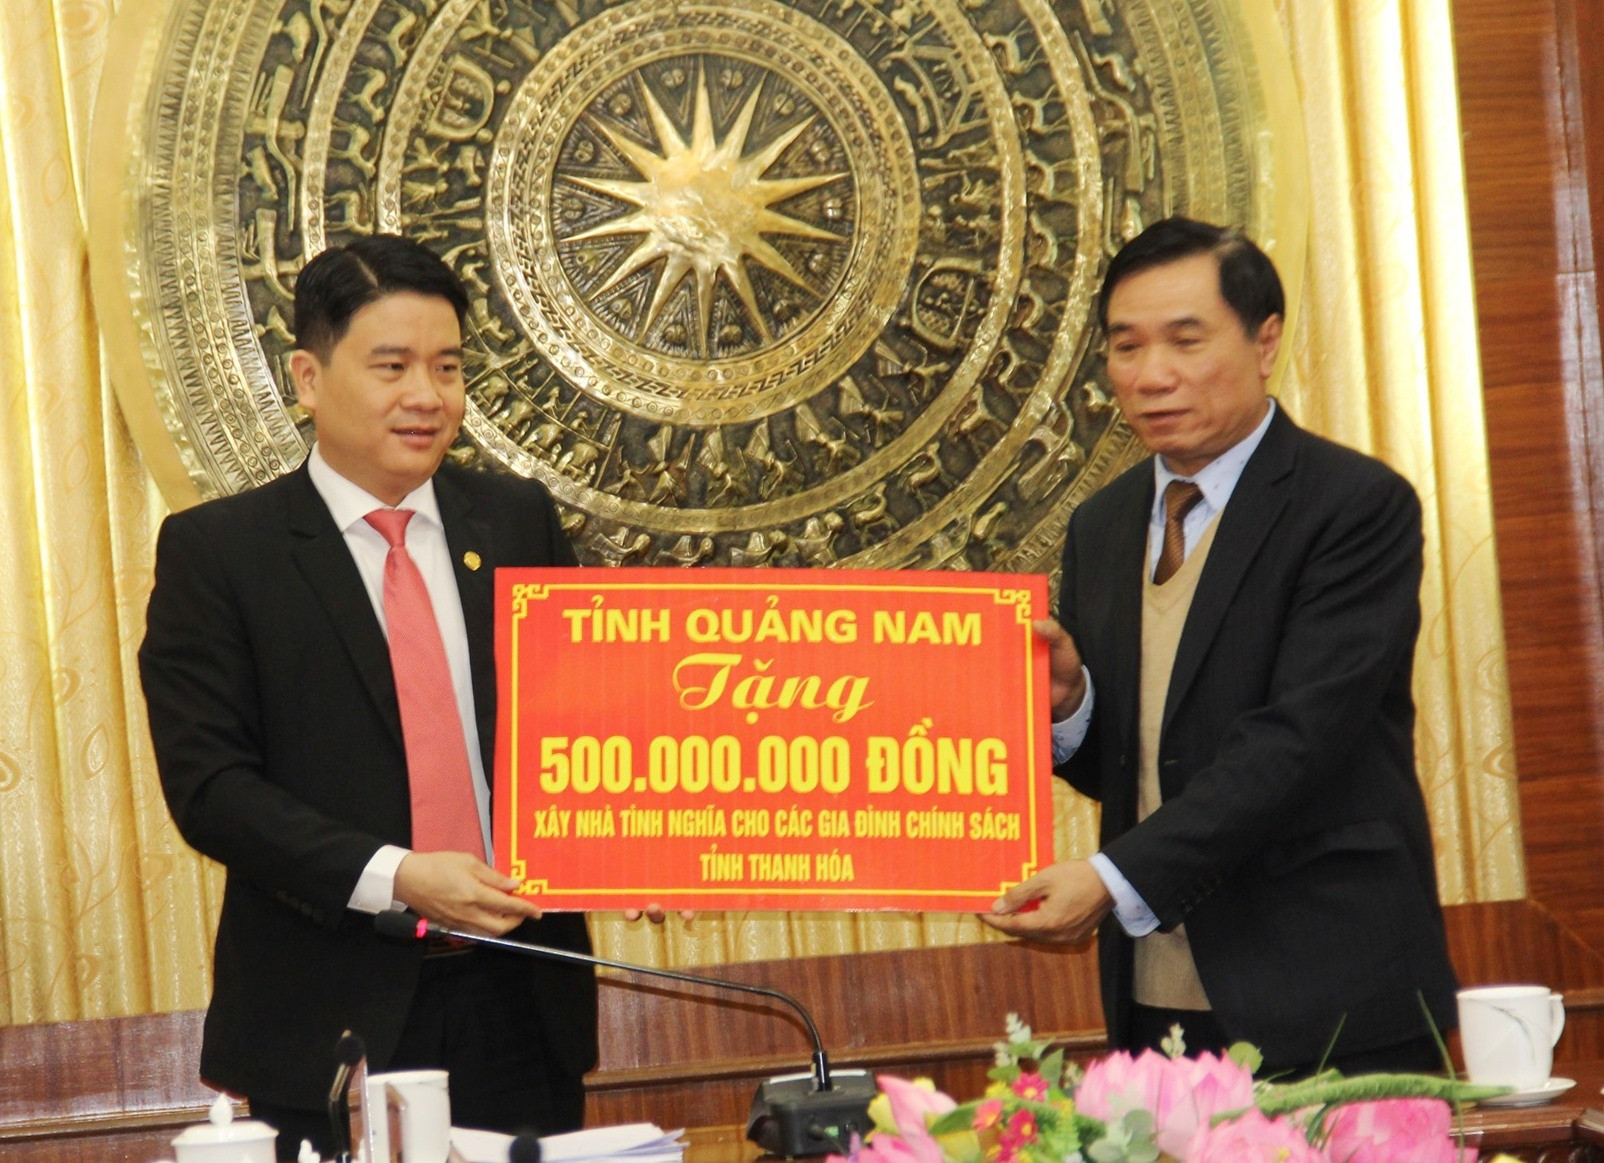 Hỗ trợ 500 triệu đồng giúp xây dựng nhà tình nghĩa tại Thanh Hóa. Ảnh: A.N